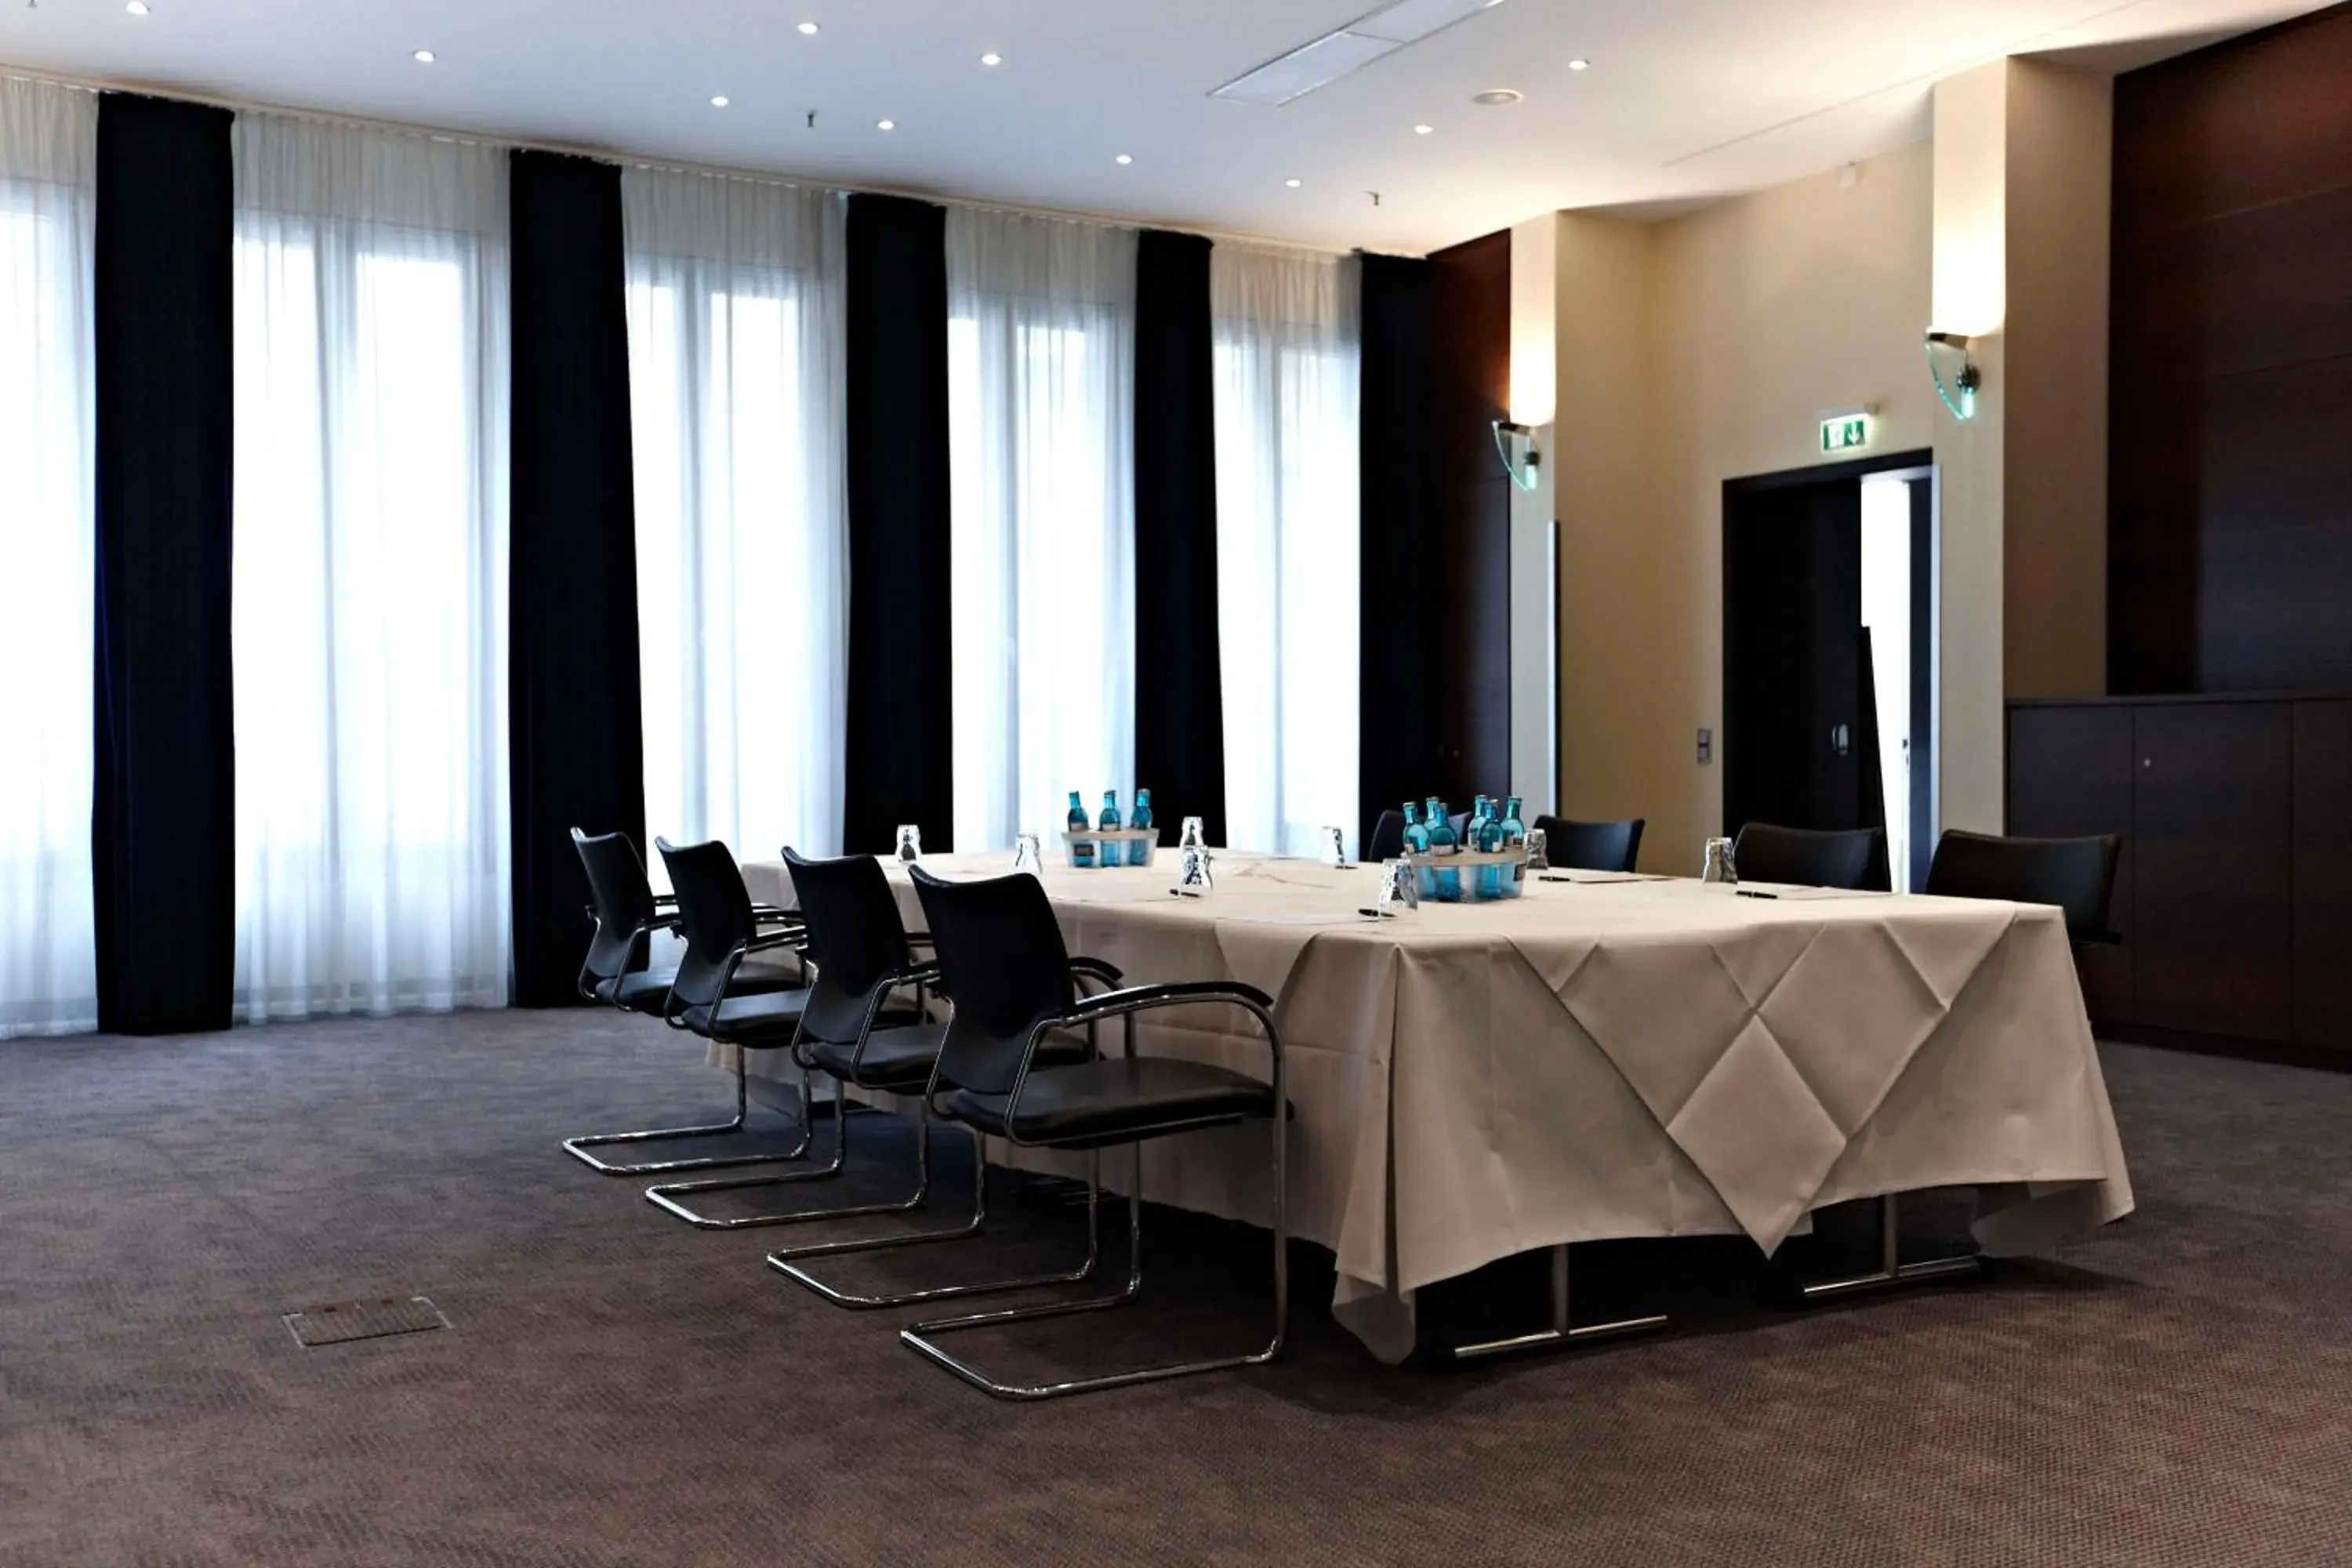 Meeting/conference room in Metropolitan Hotel by Flemings